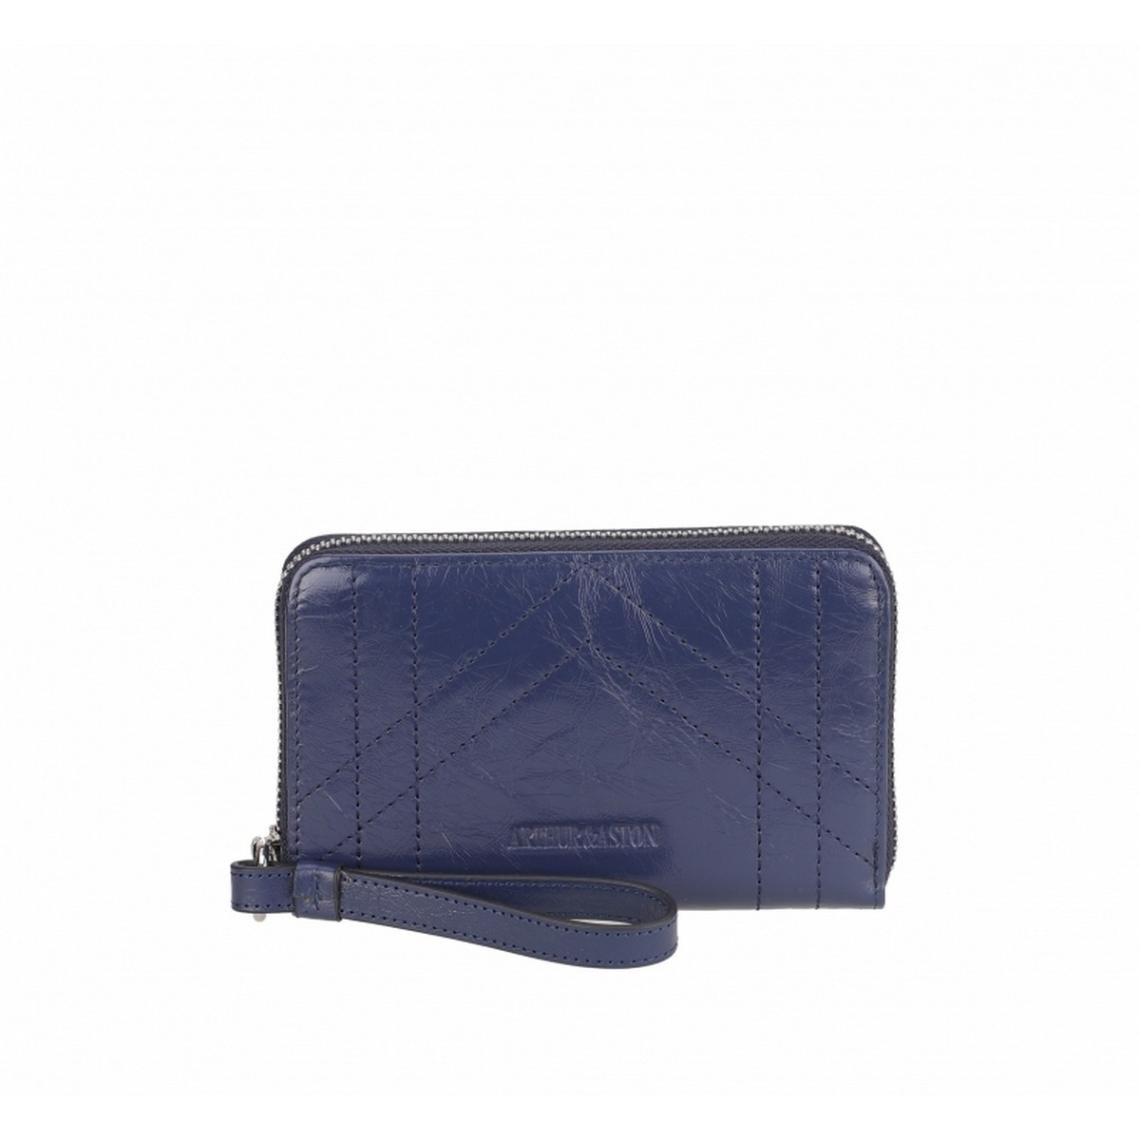 porte-monnaie et carte zippée en cuir bleu nuit